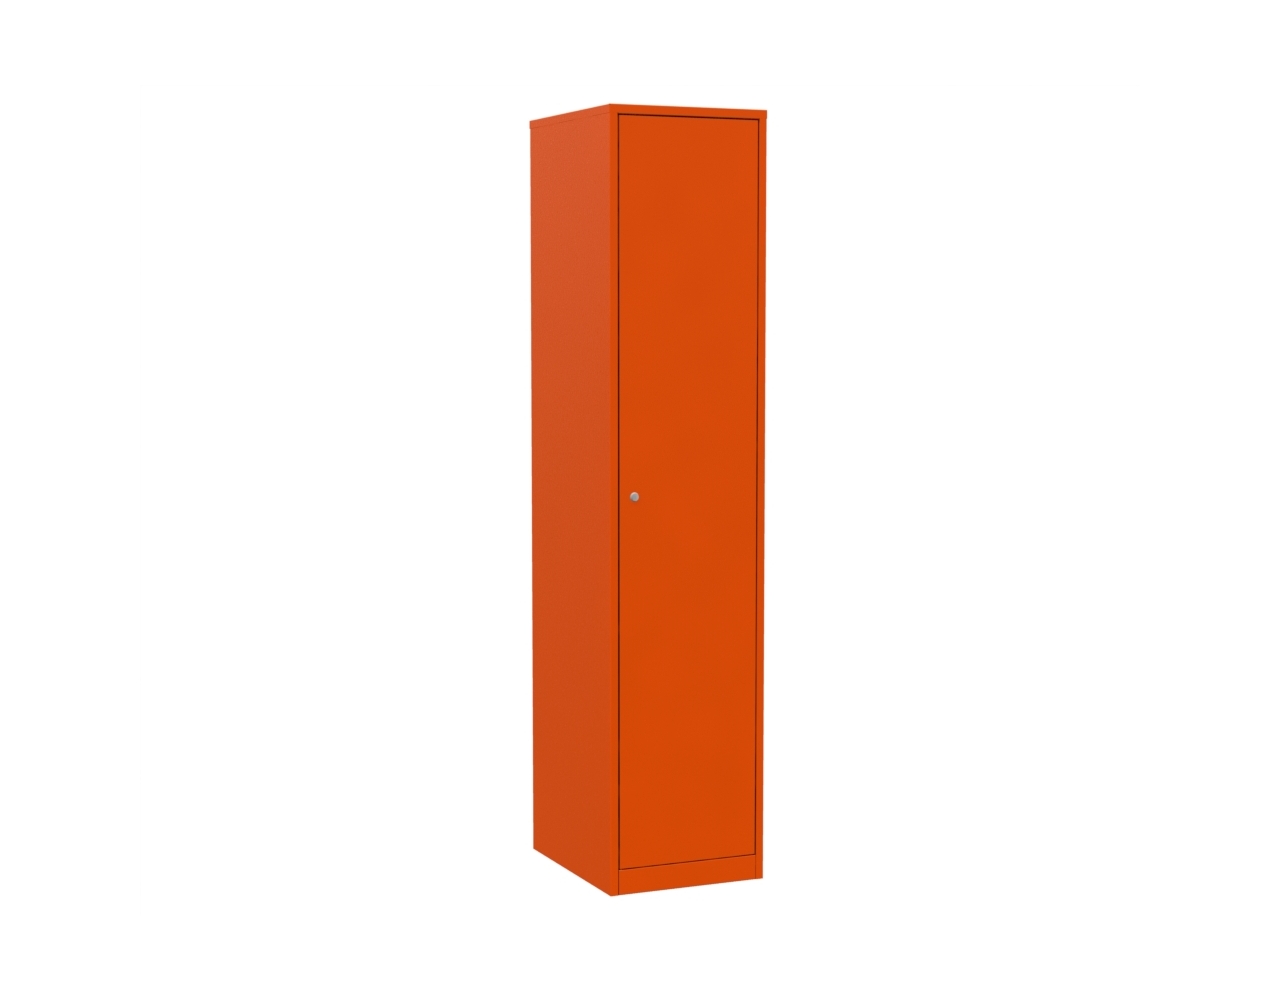 Шкаф для хранения спецодежды и инвентаря ШРВ-ОД-400 оранжевый